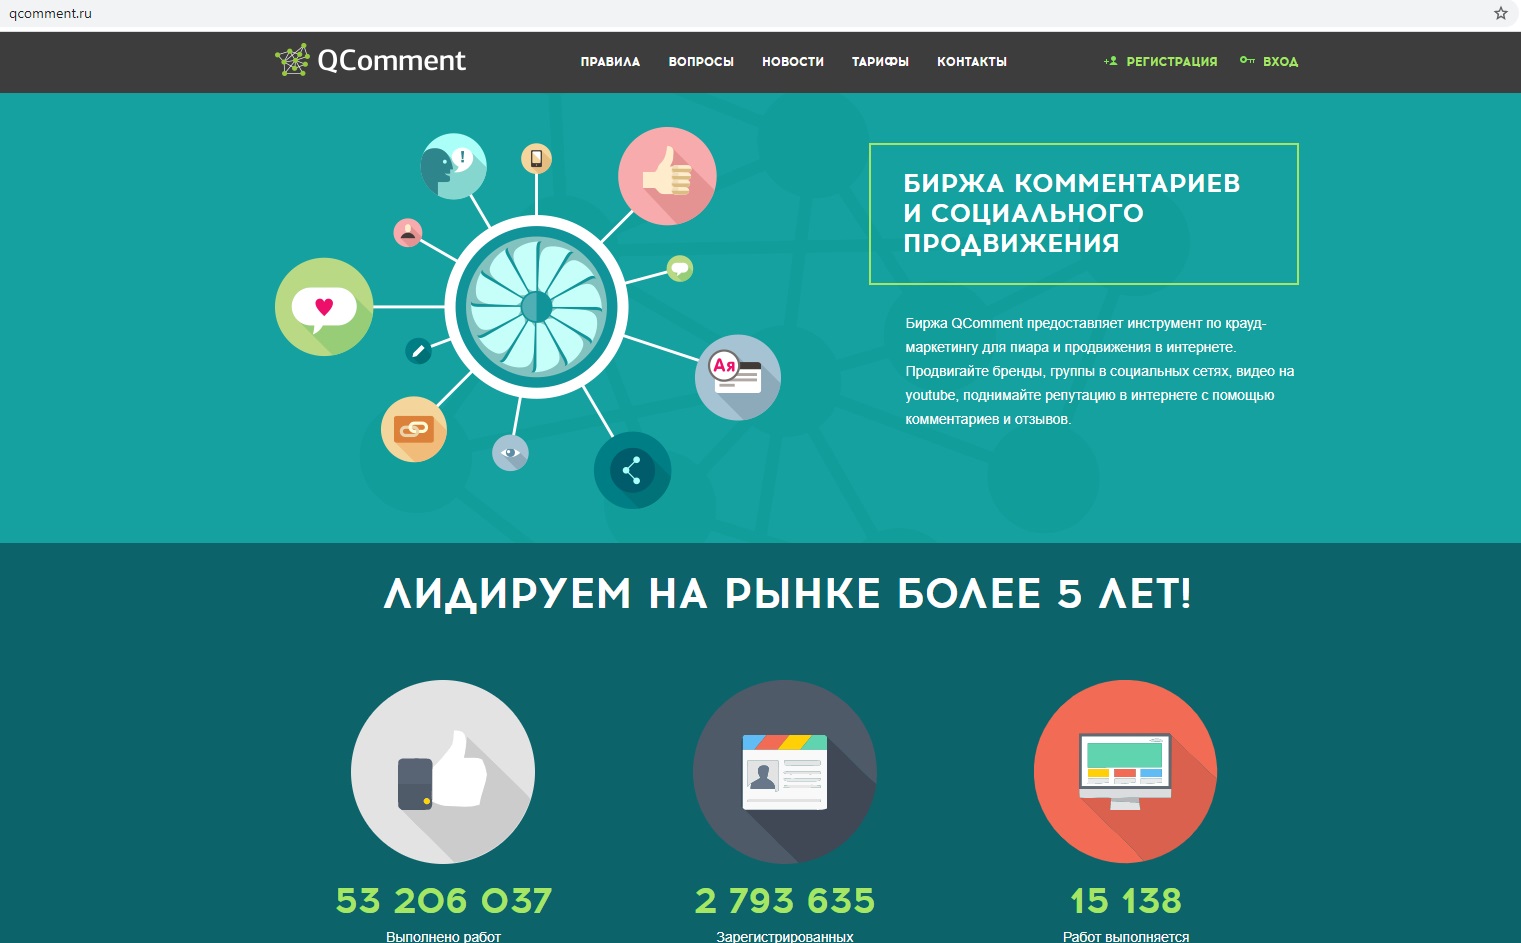 Zarobki na qcomment.ru